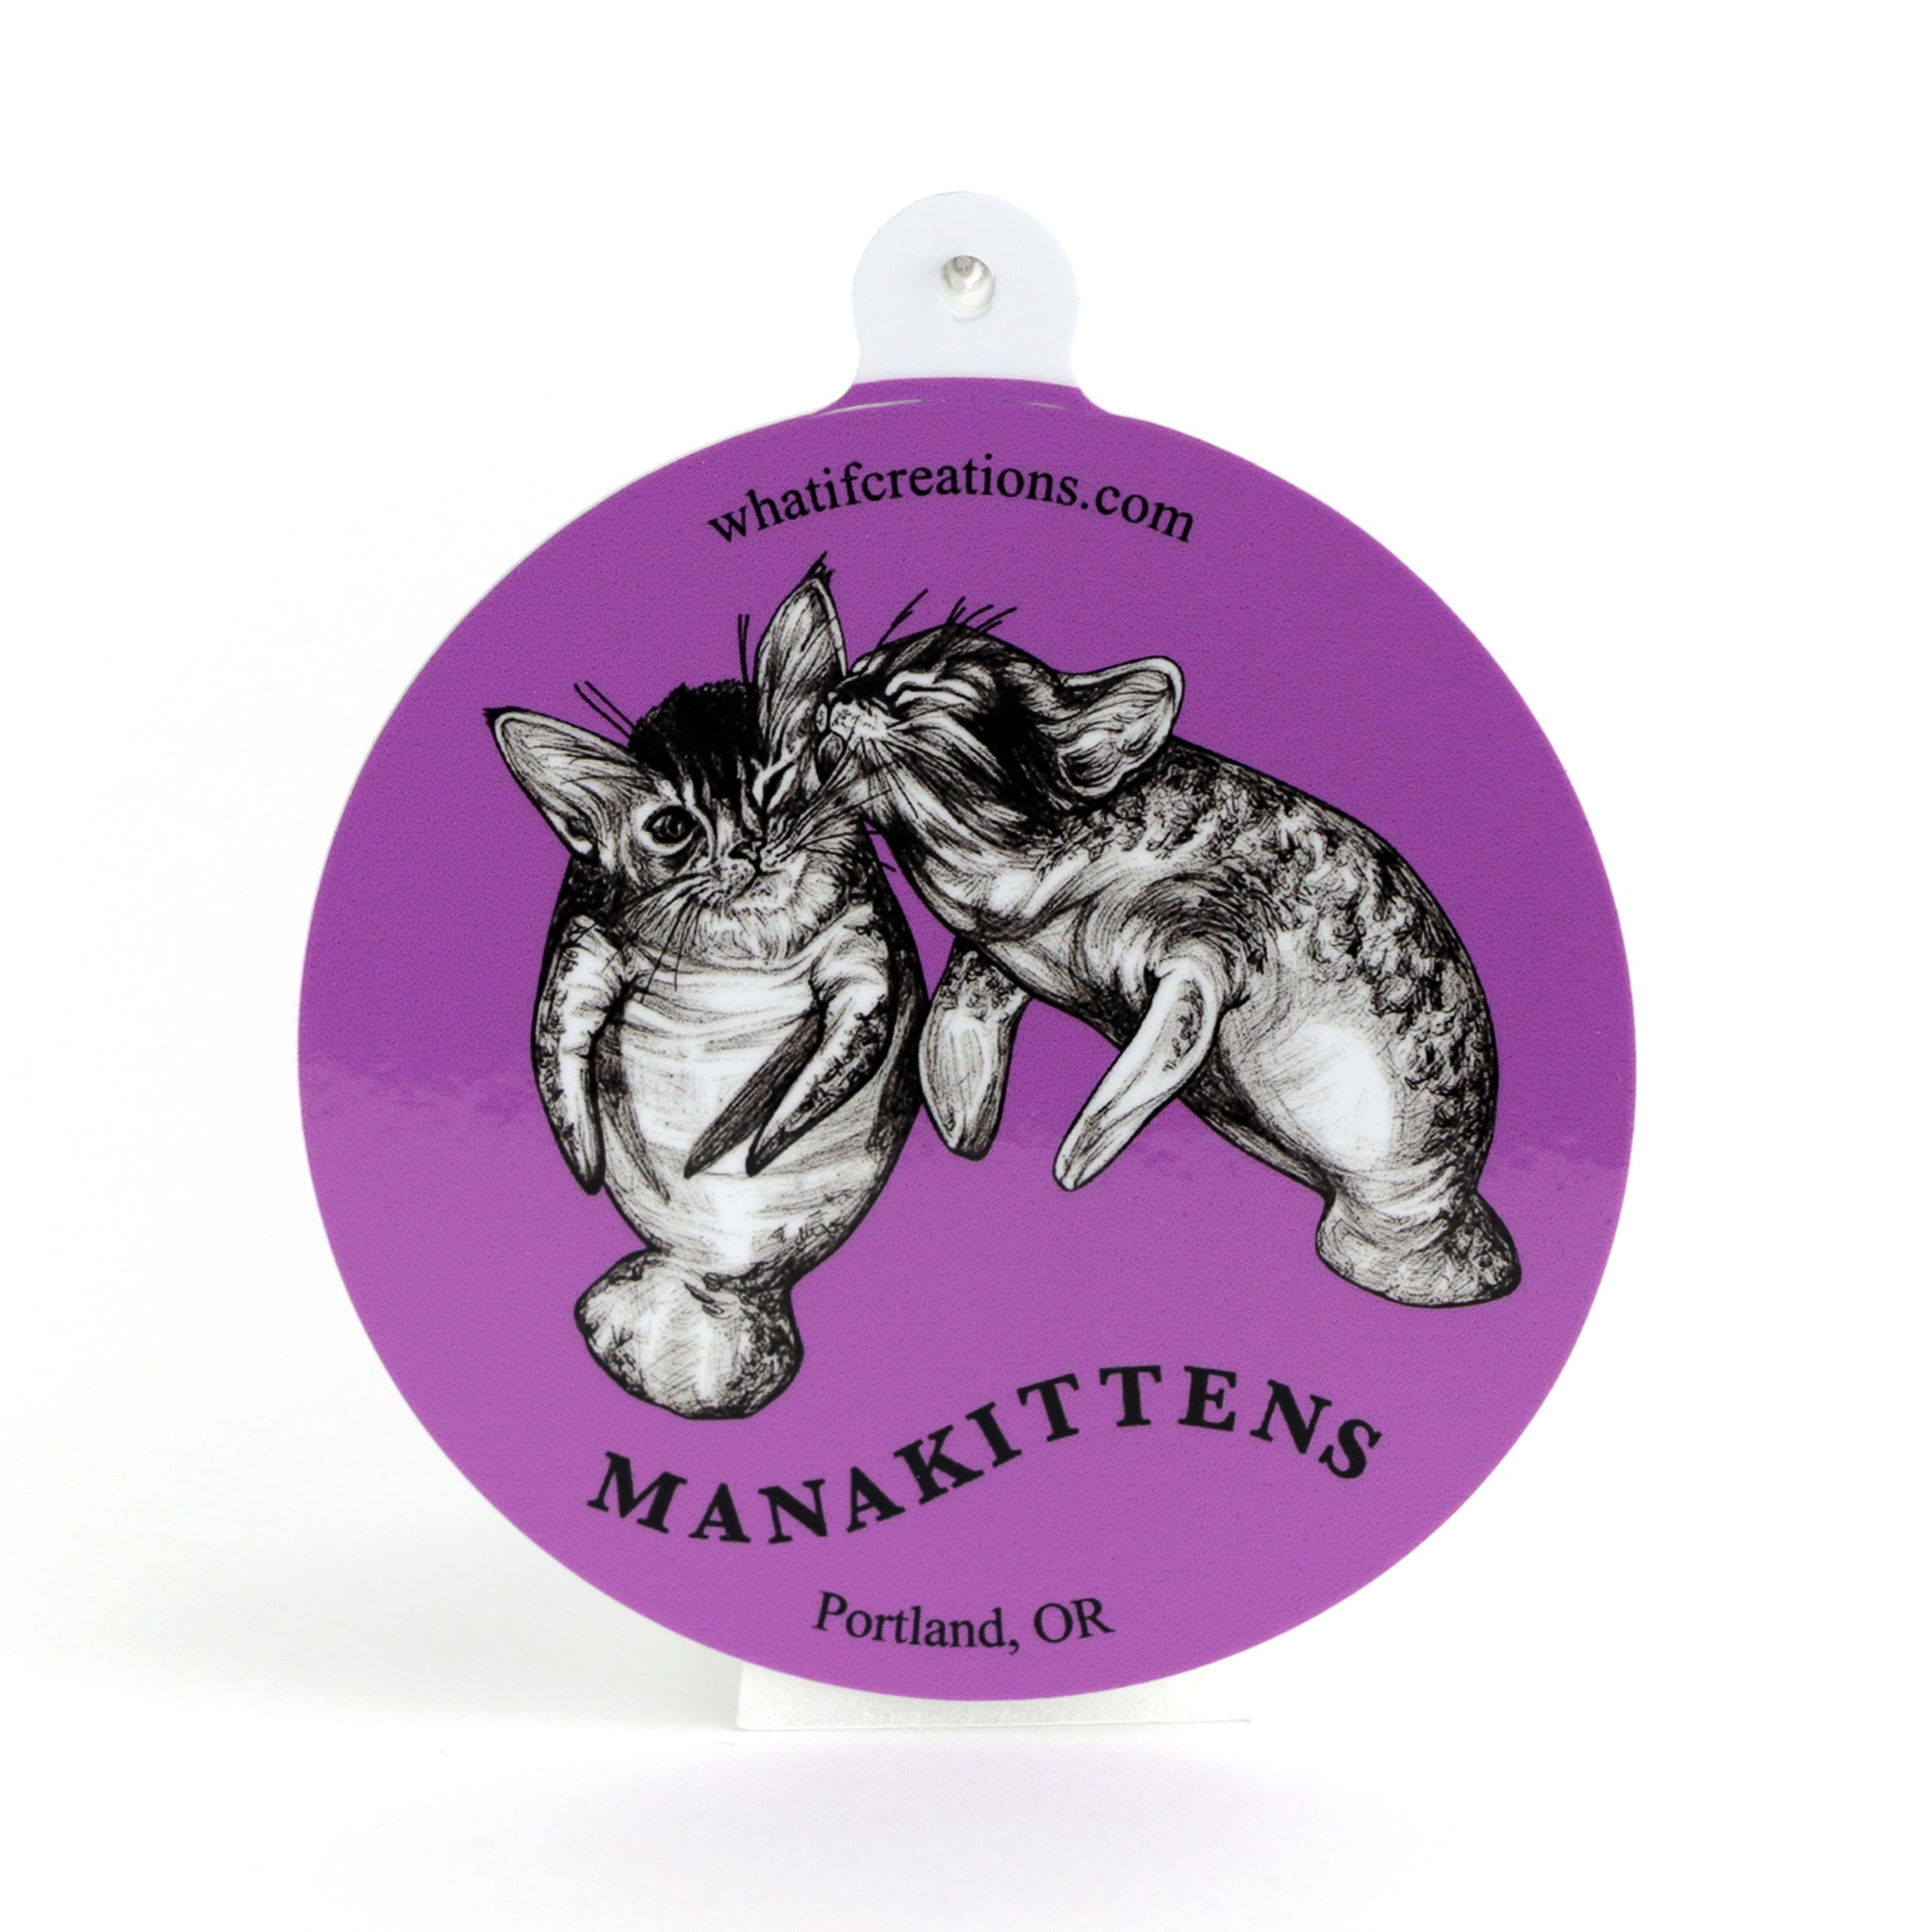 Manakittens | Manatee + Kitten Hybrid Animal | 3" Vinyl Sticker